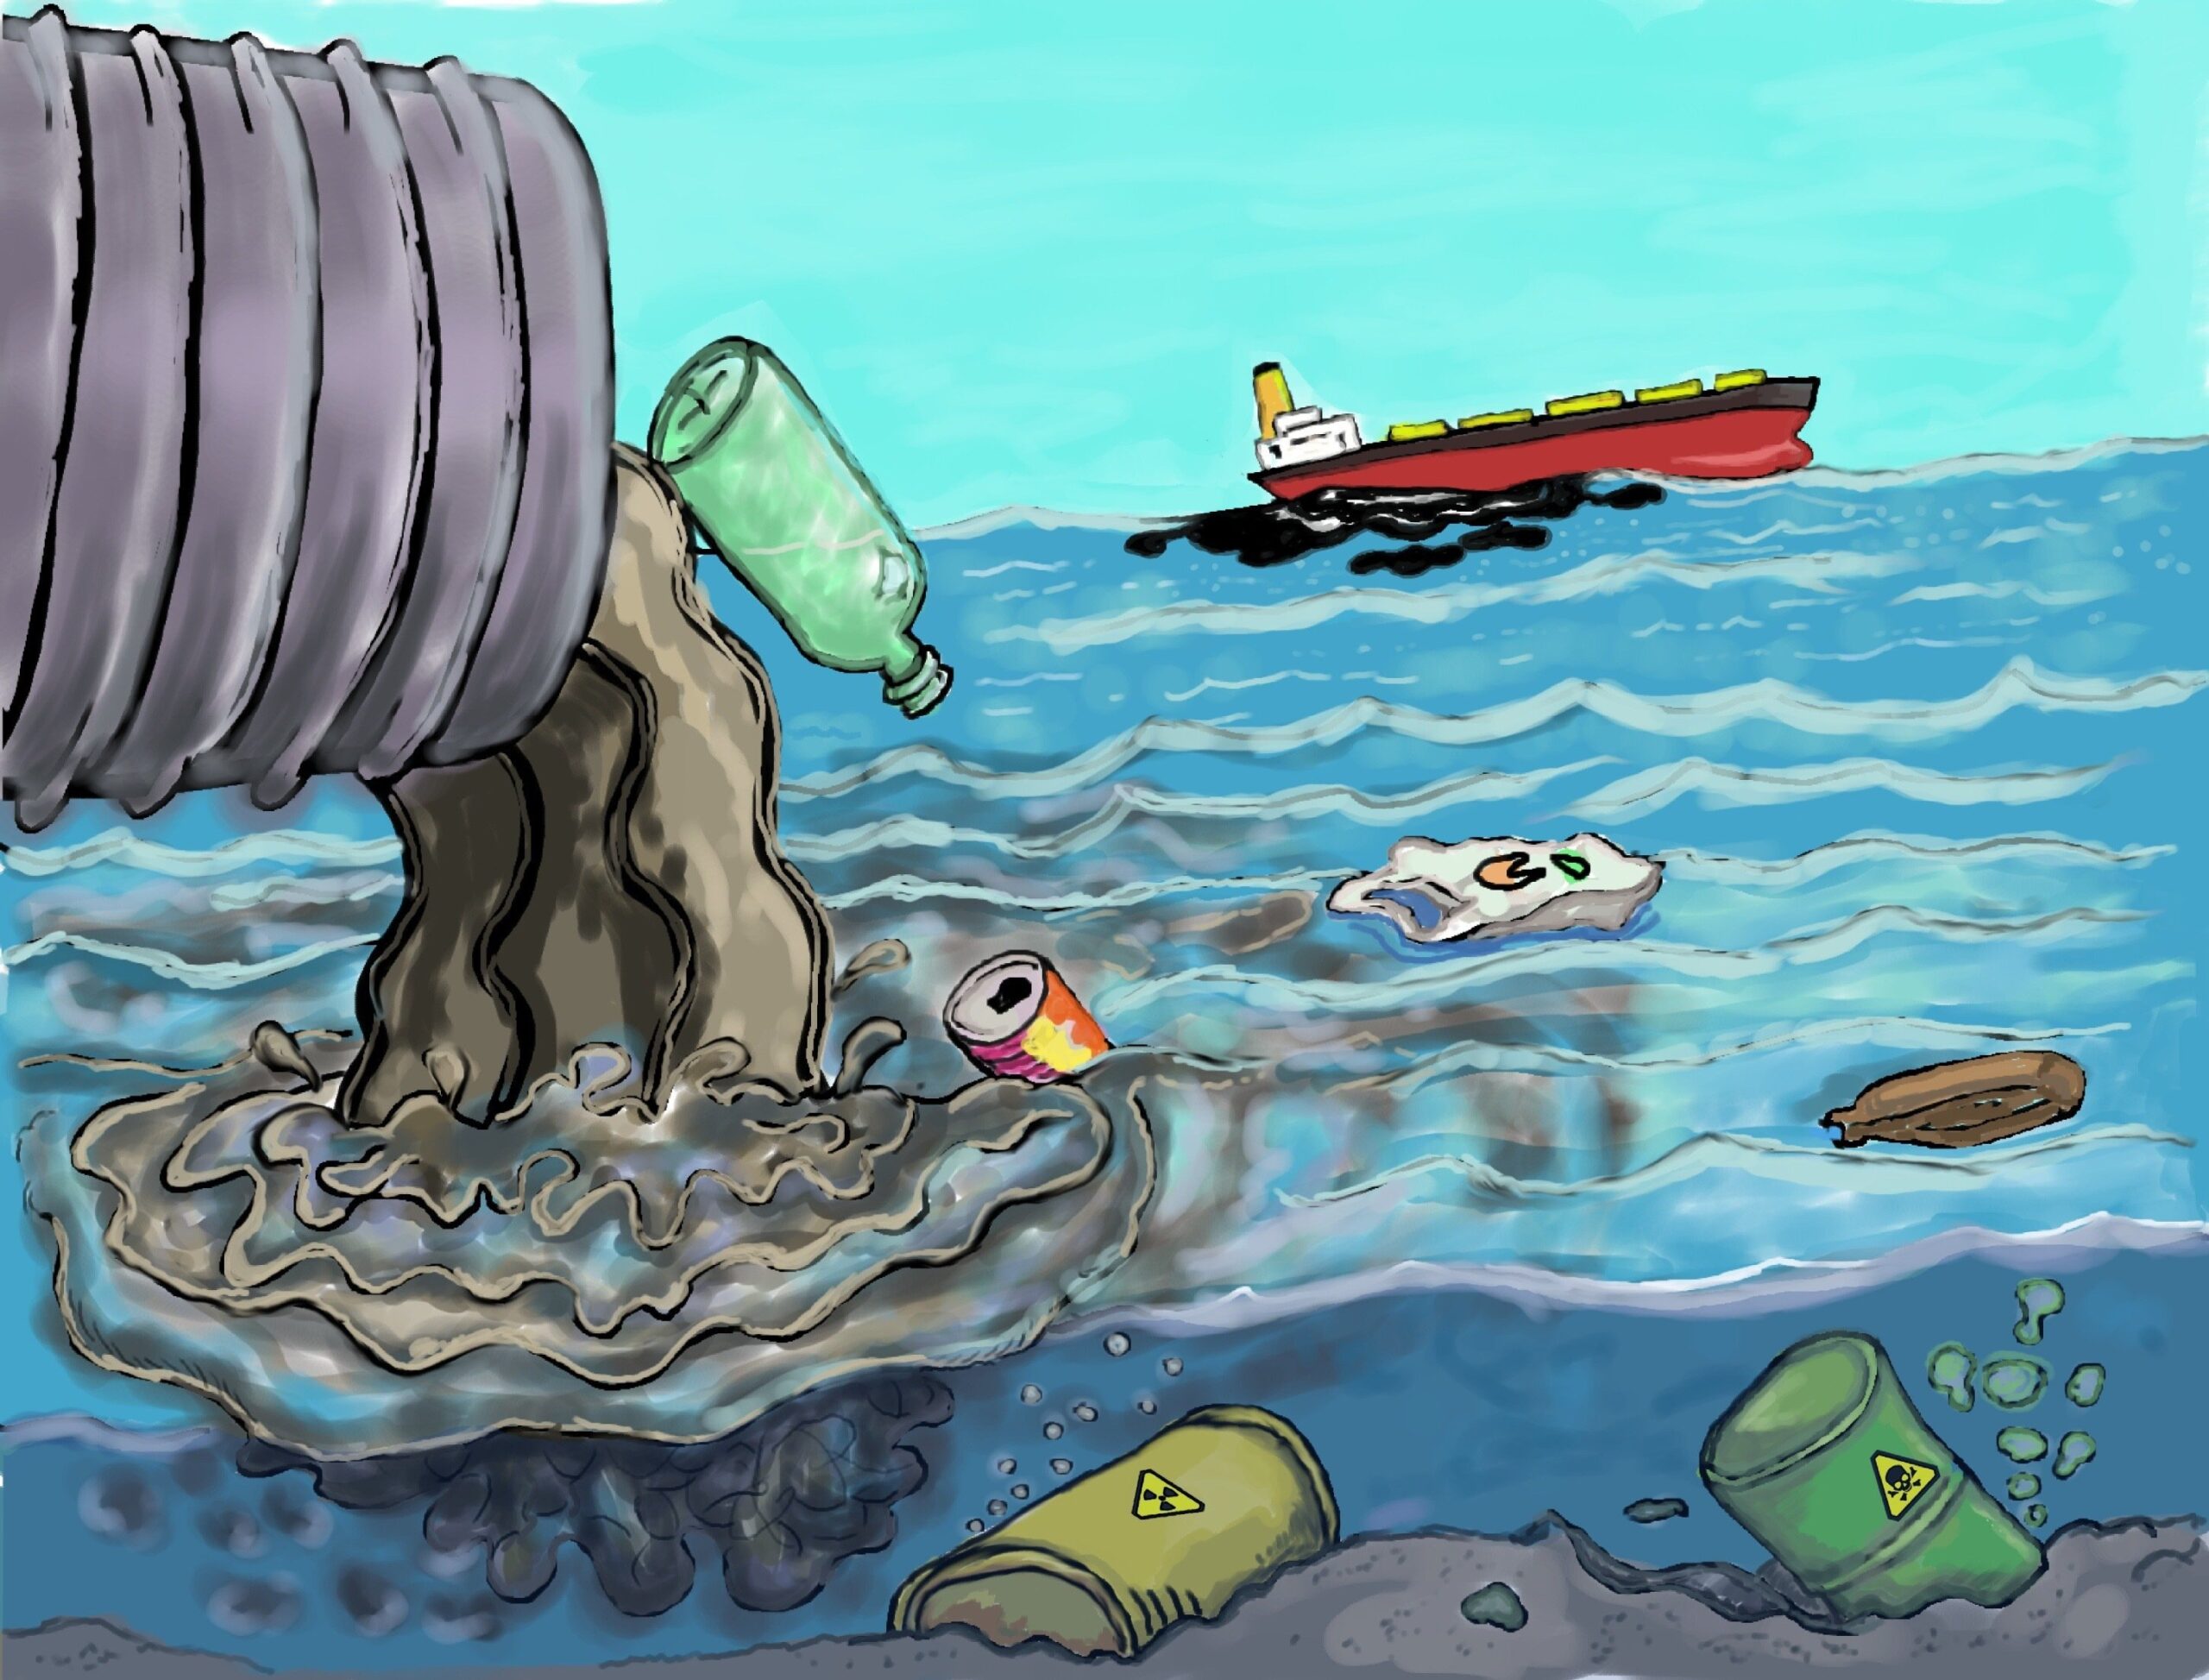  تاثیرات آلودگی بر محیط زیست دریایی و نقش فناوری در جلوگیری از آن